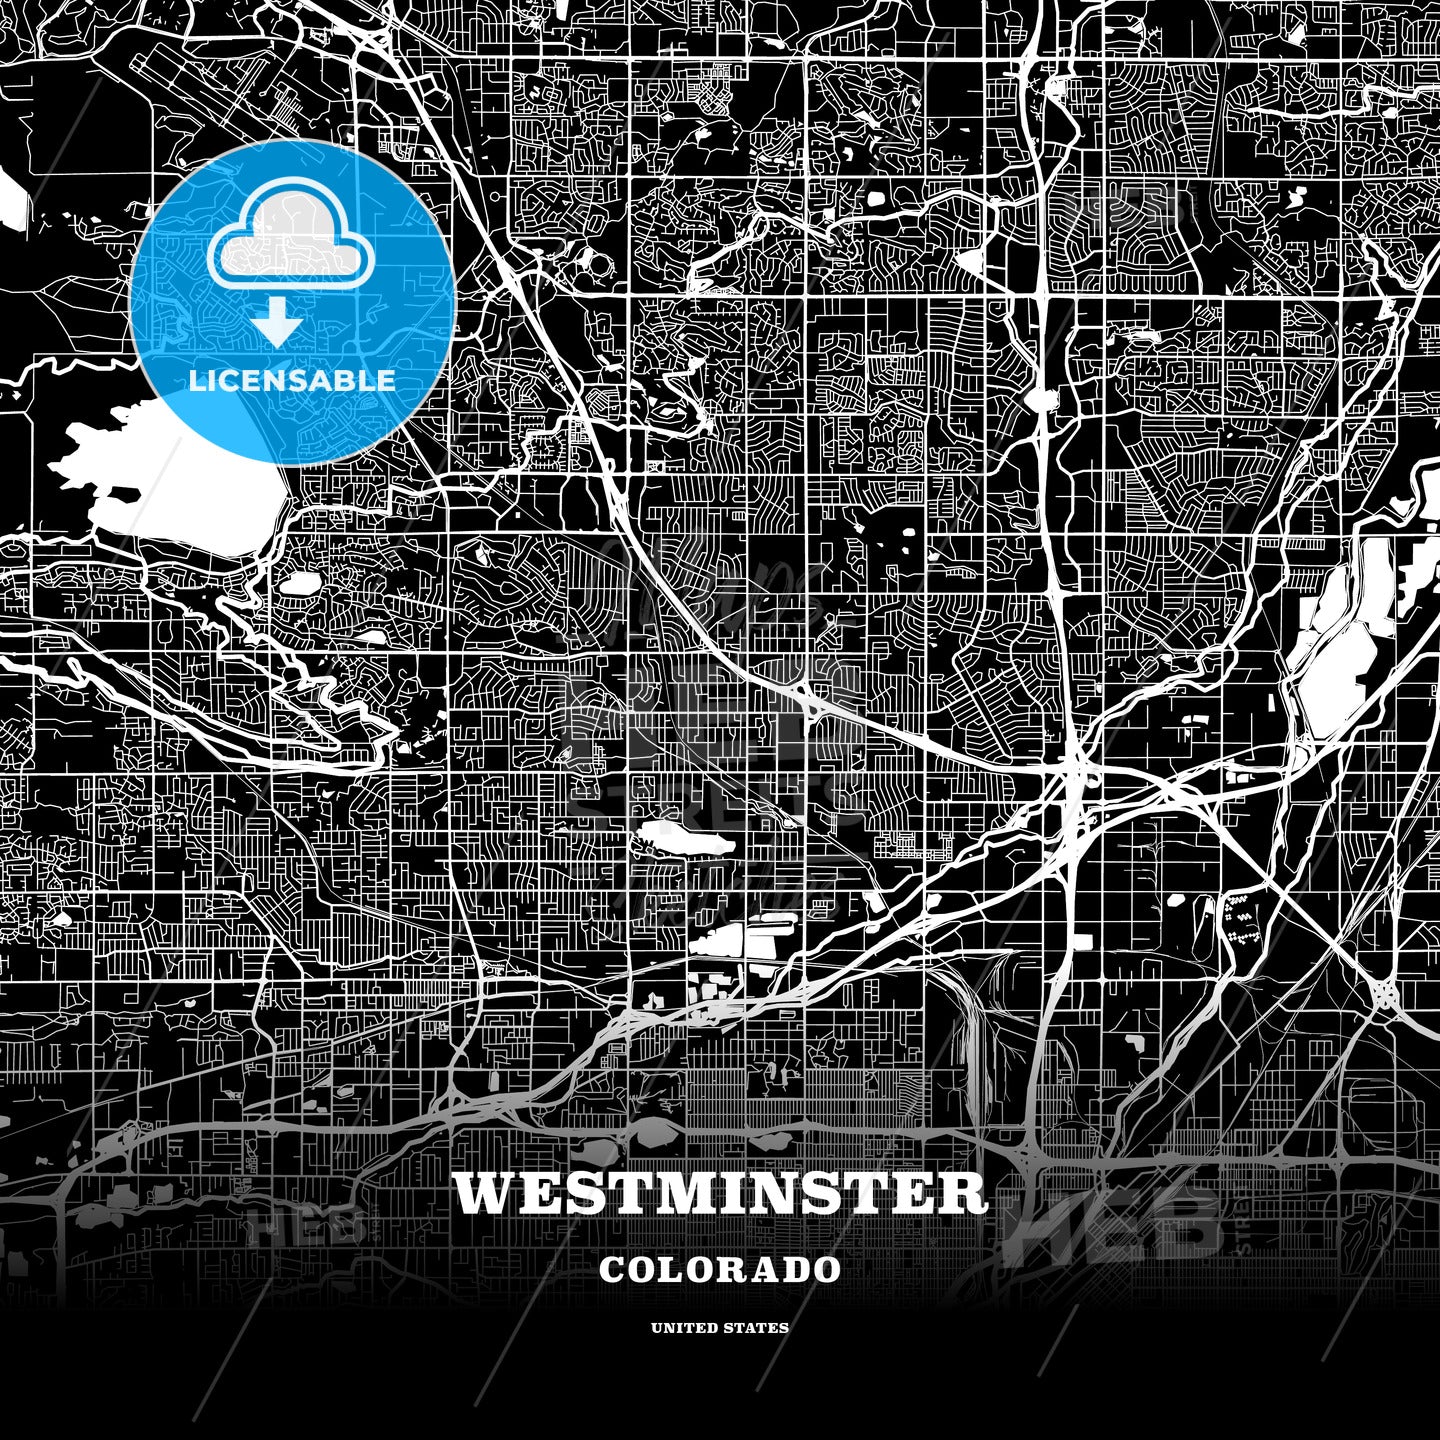 Westminster, Colorado, USA map